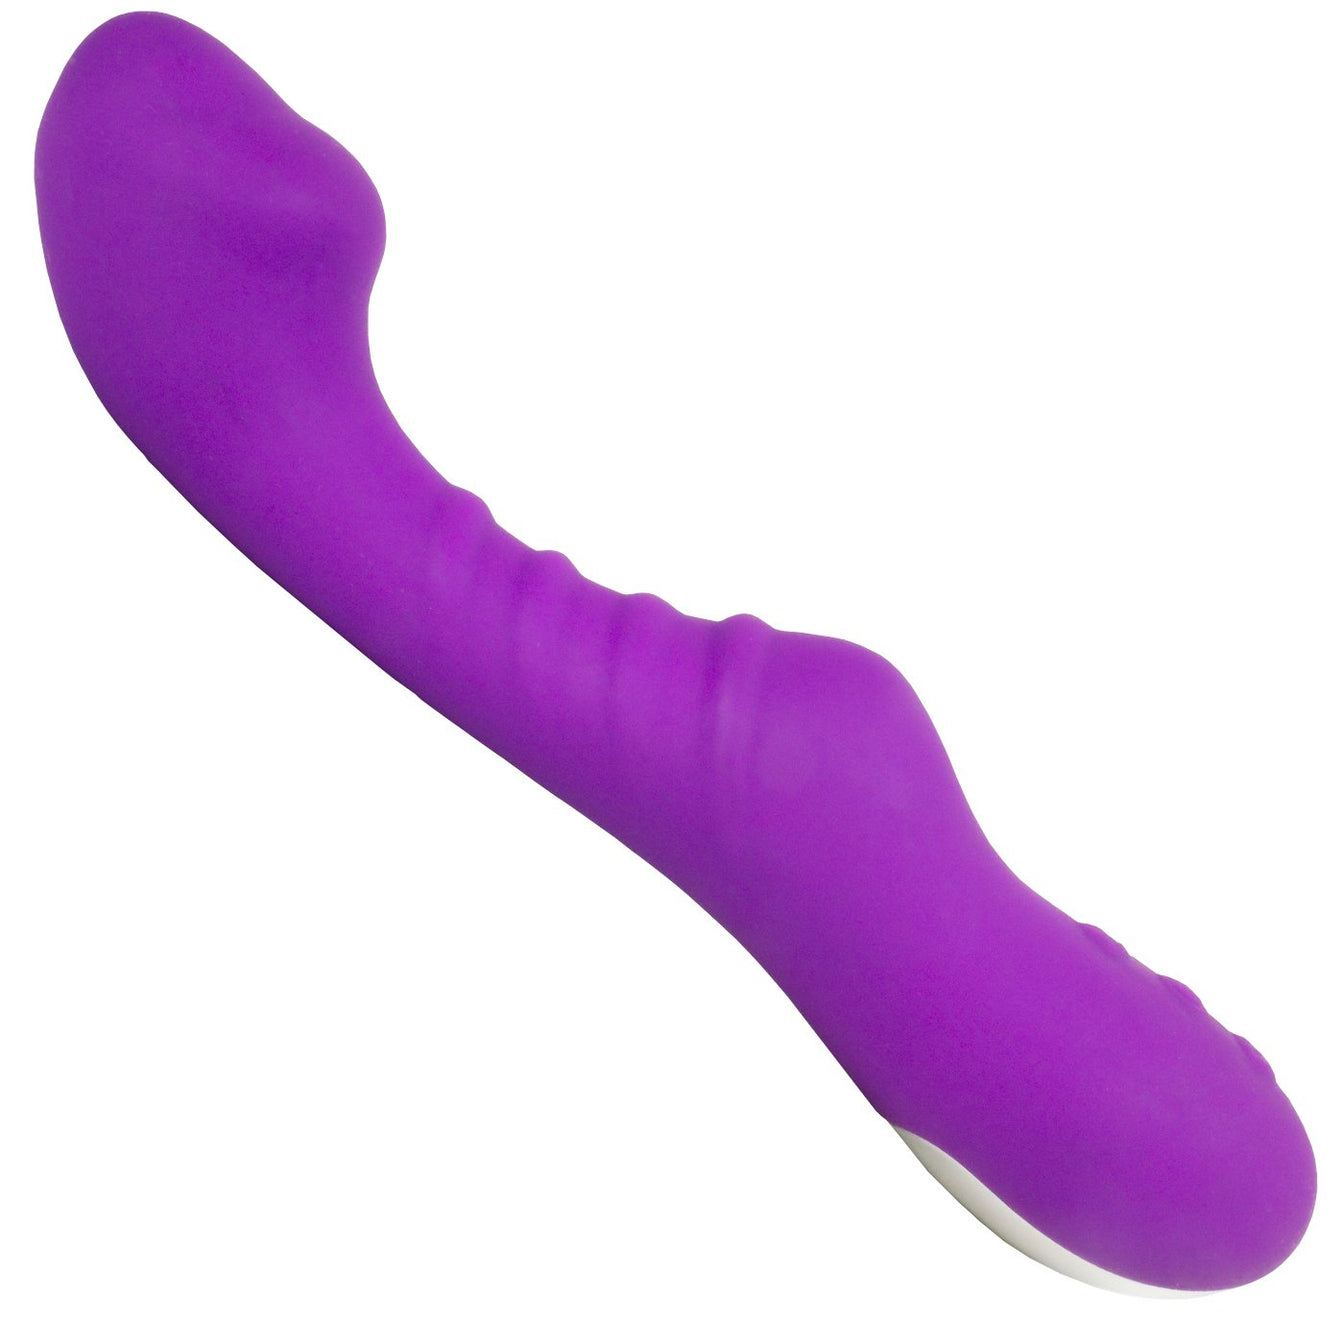 Bright purple silicone gspot massager